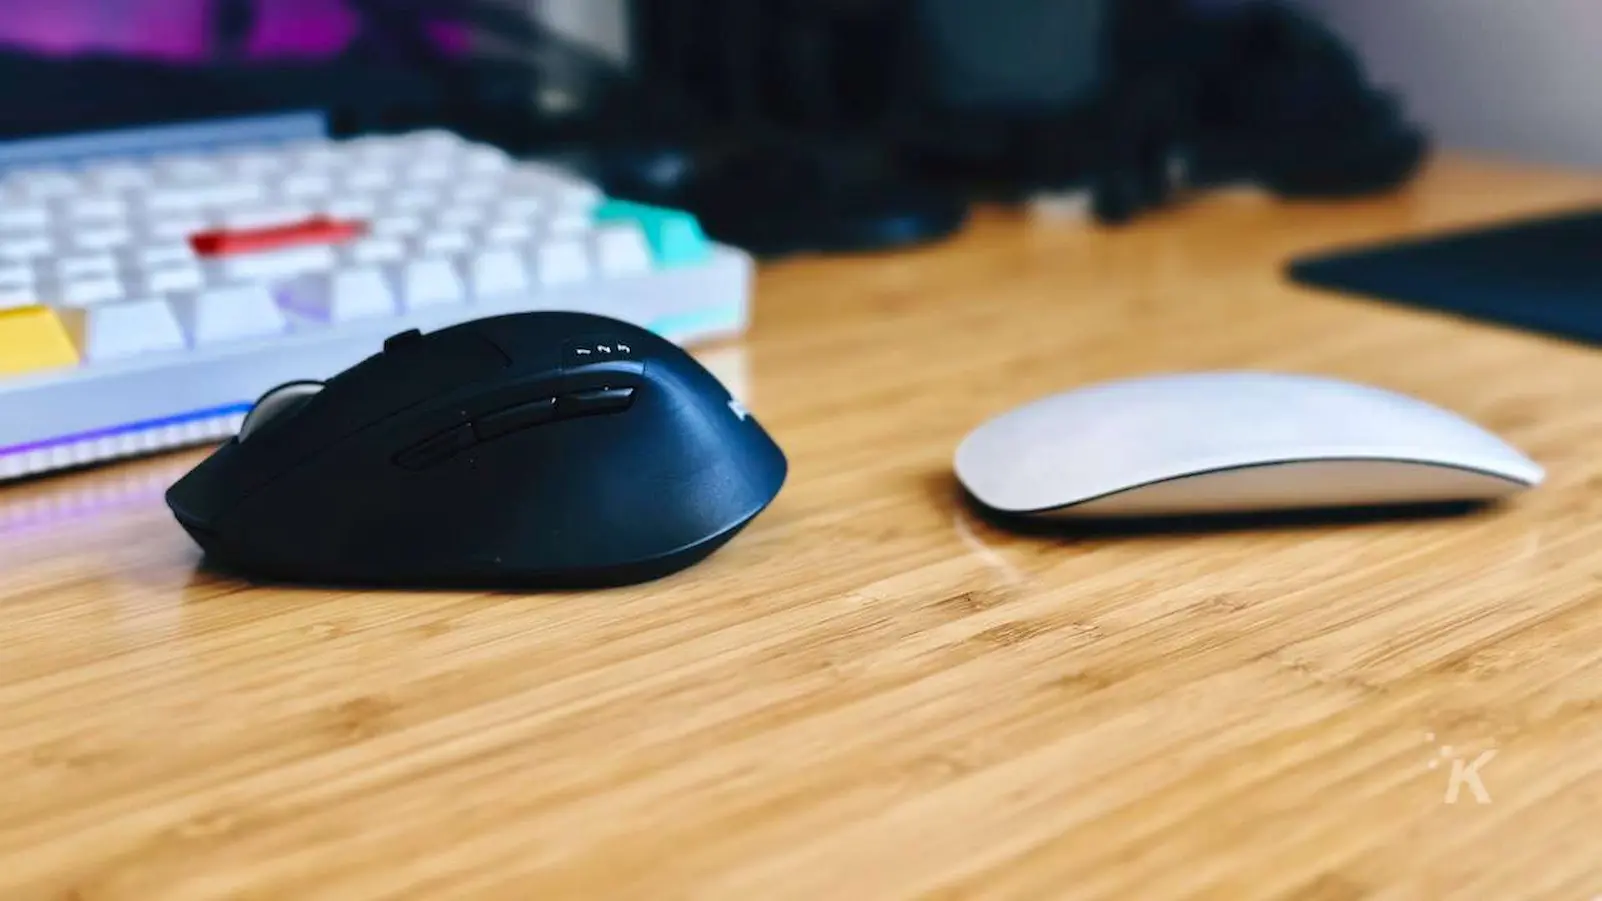 immagine affiancata di Apple Magic Mouse rispetto al mouse Logitech M720 sulla scrivania dell'ufficio